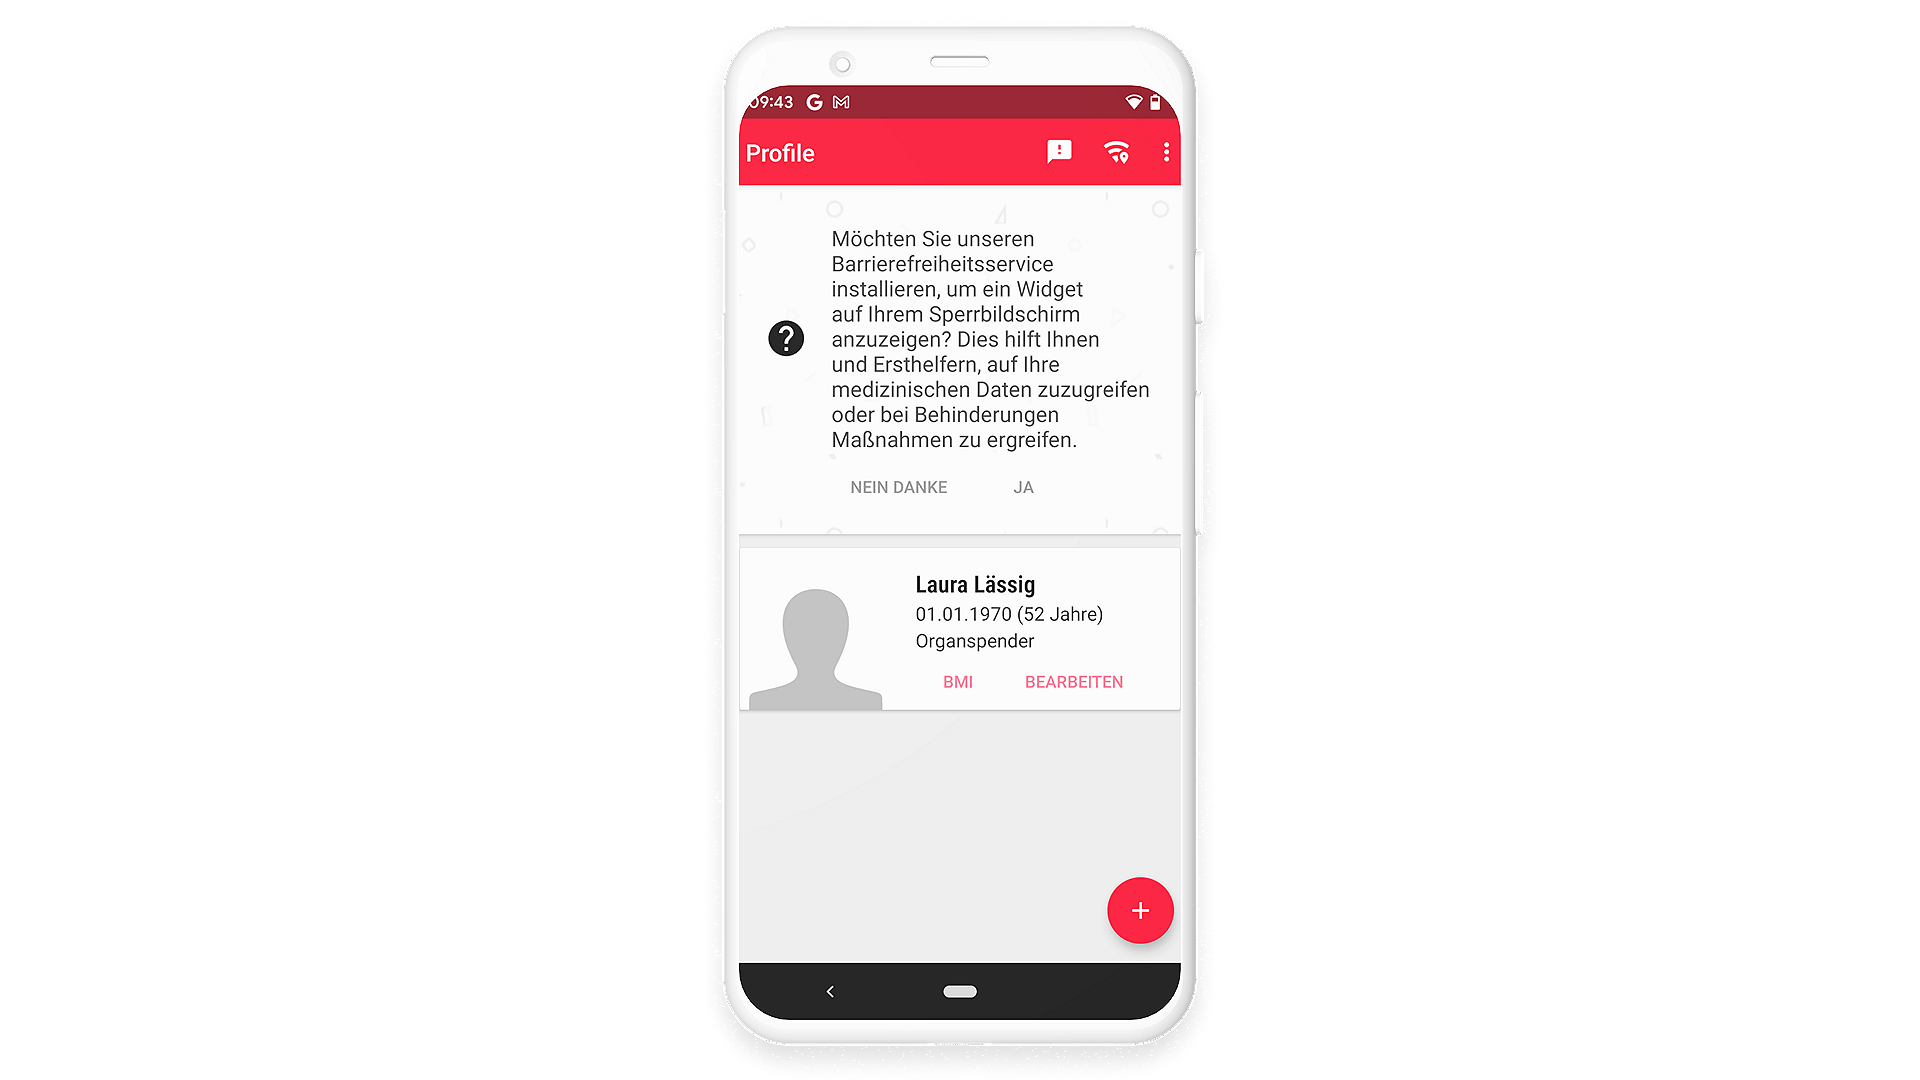 Beispiel-Profil in der Handy-App Notfall-ID